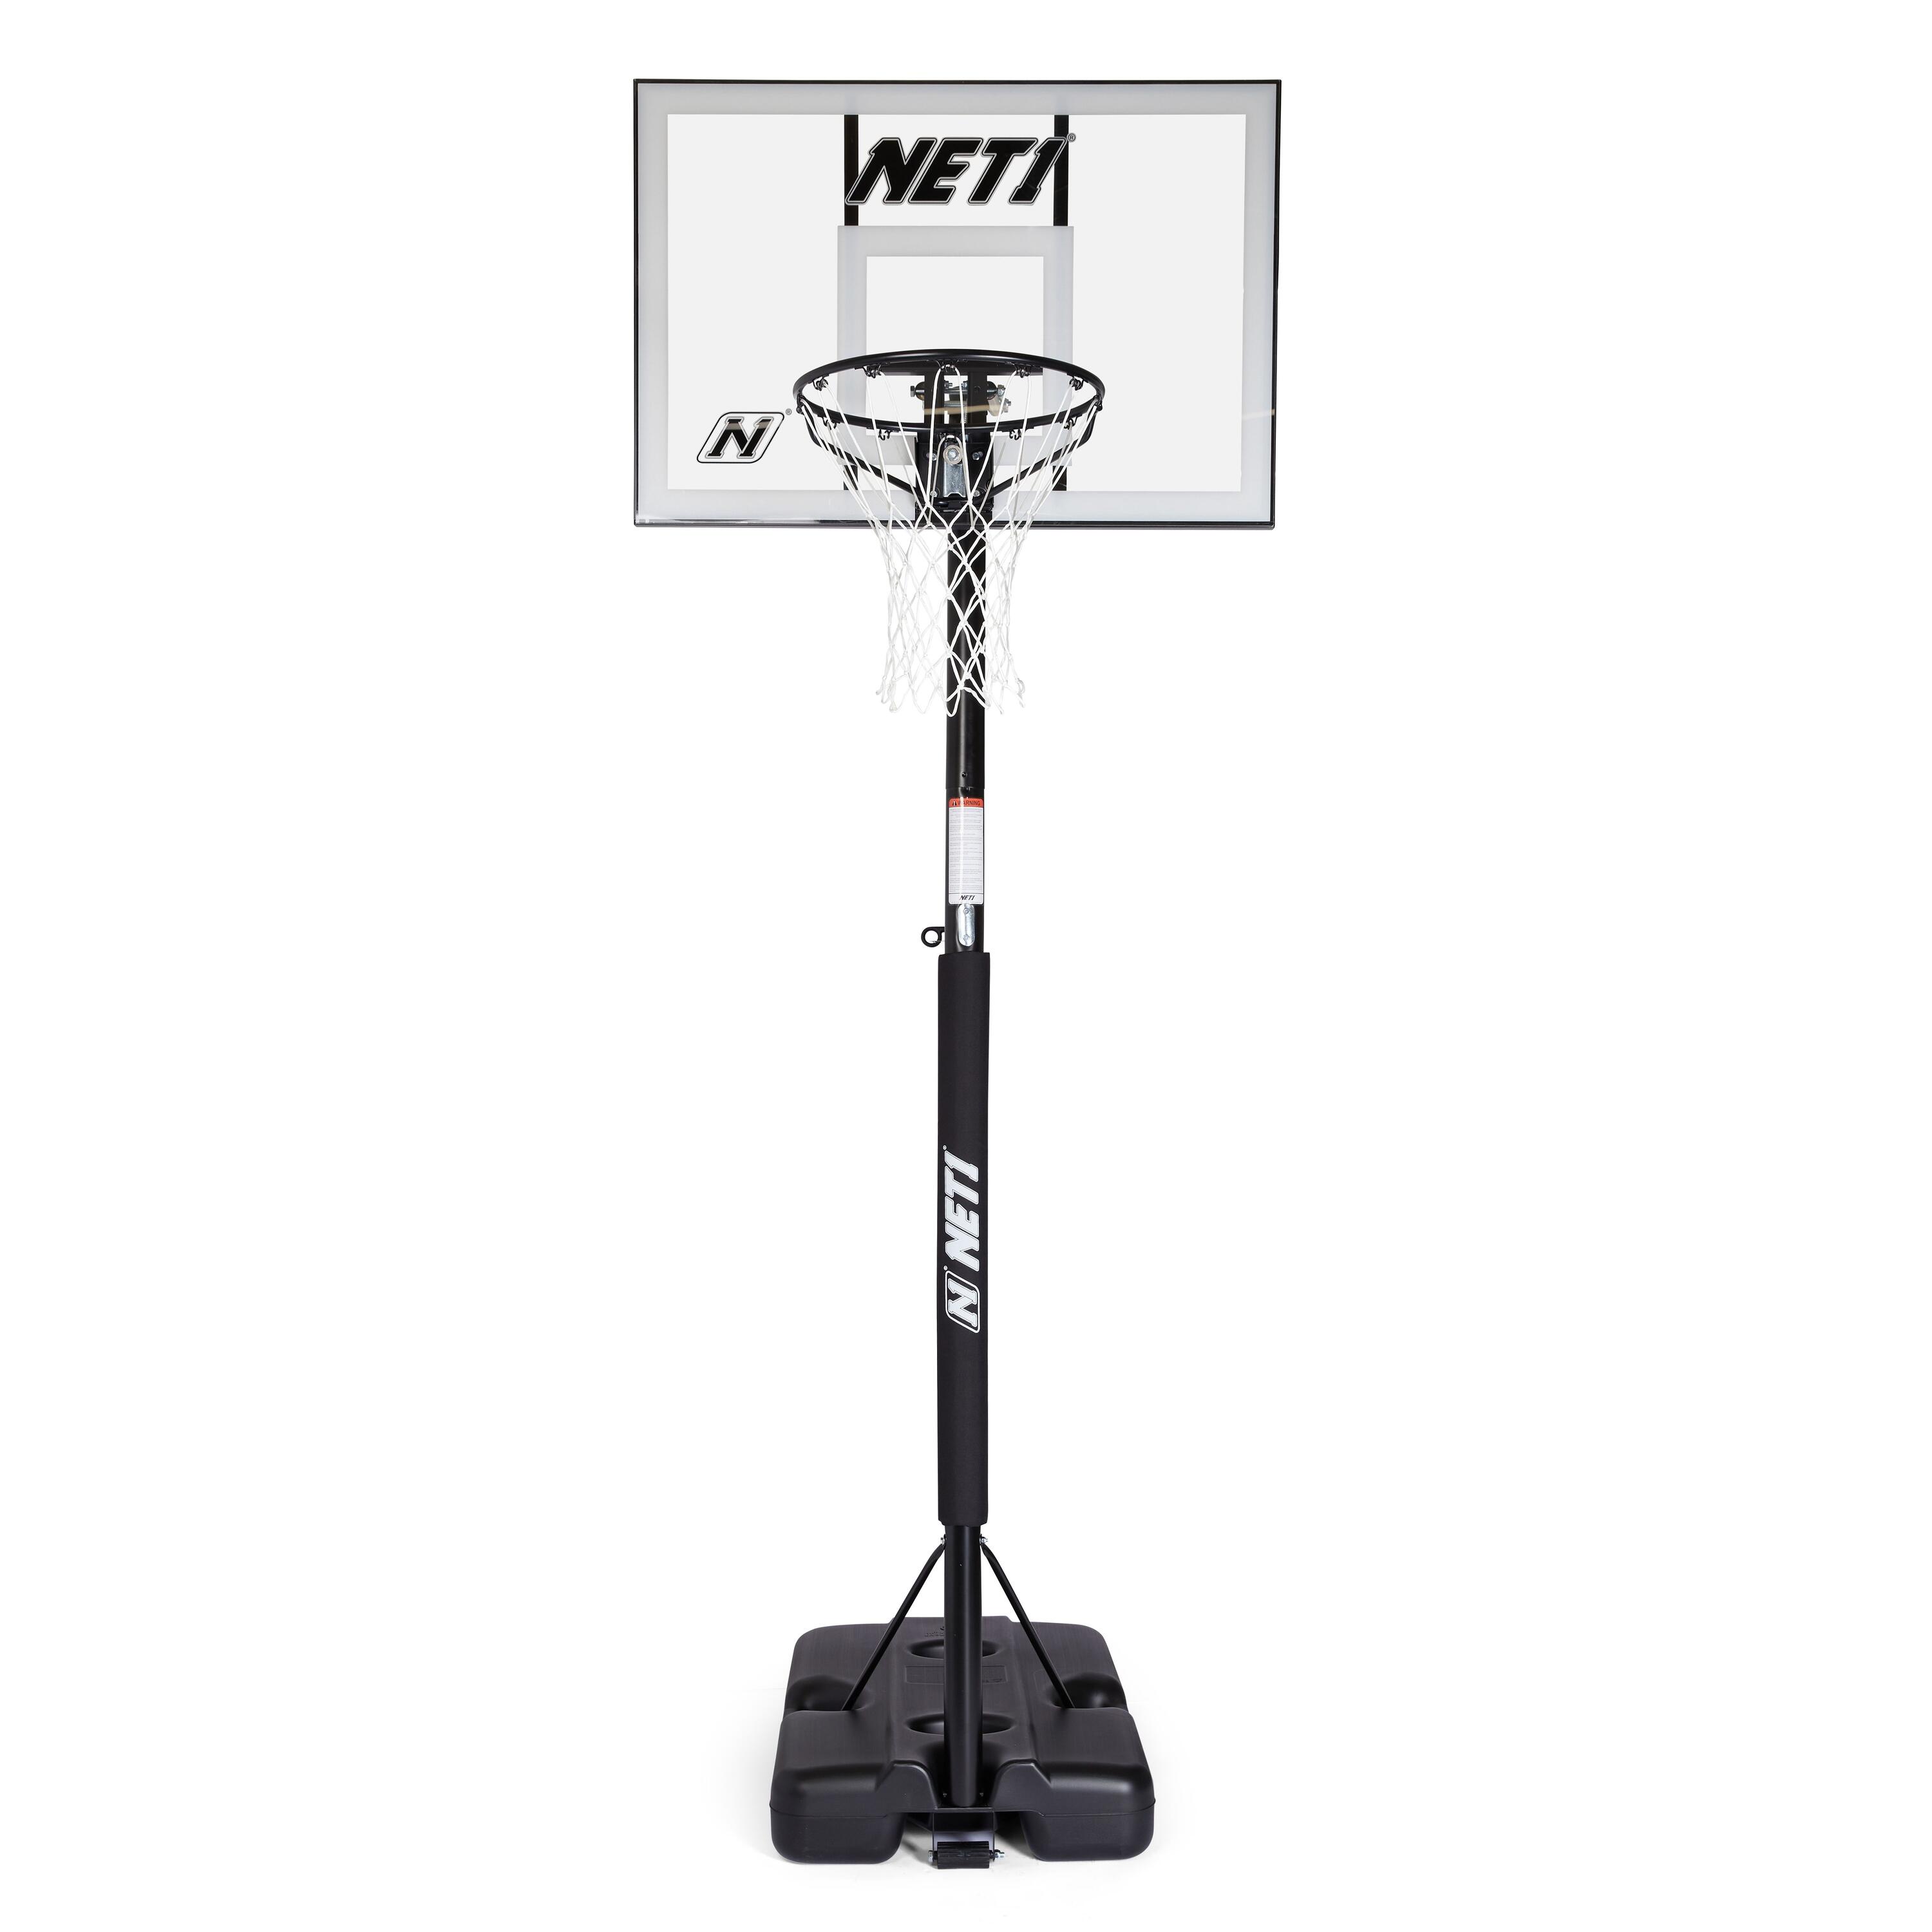 NET1 NET1 Millennium Basketball Hoop